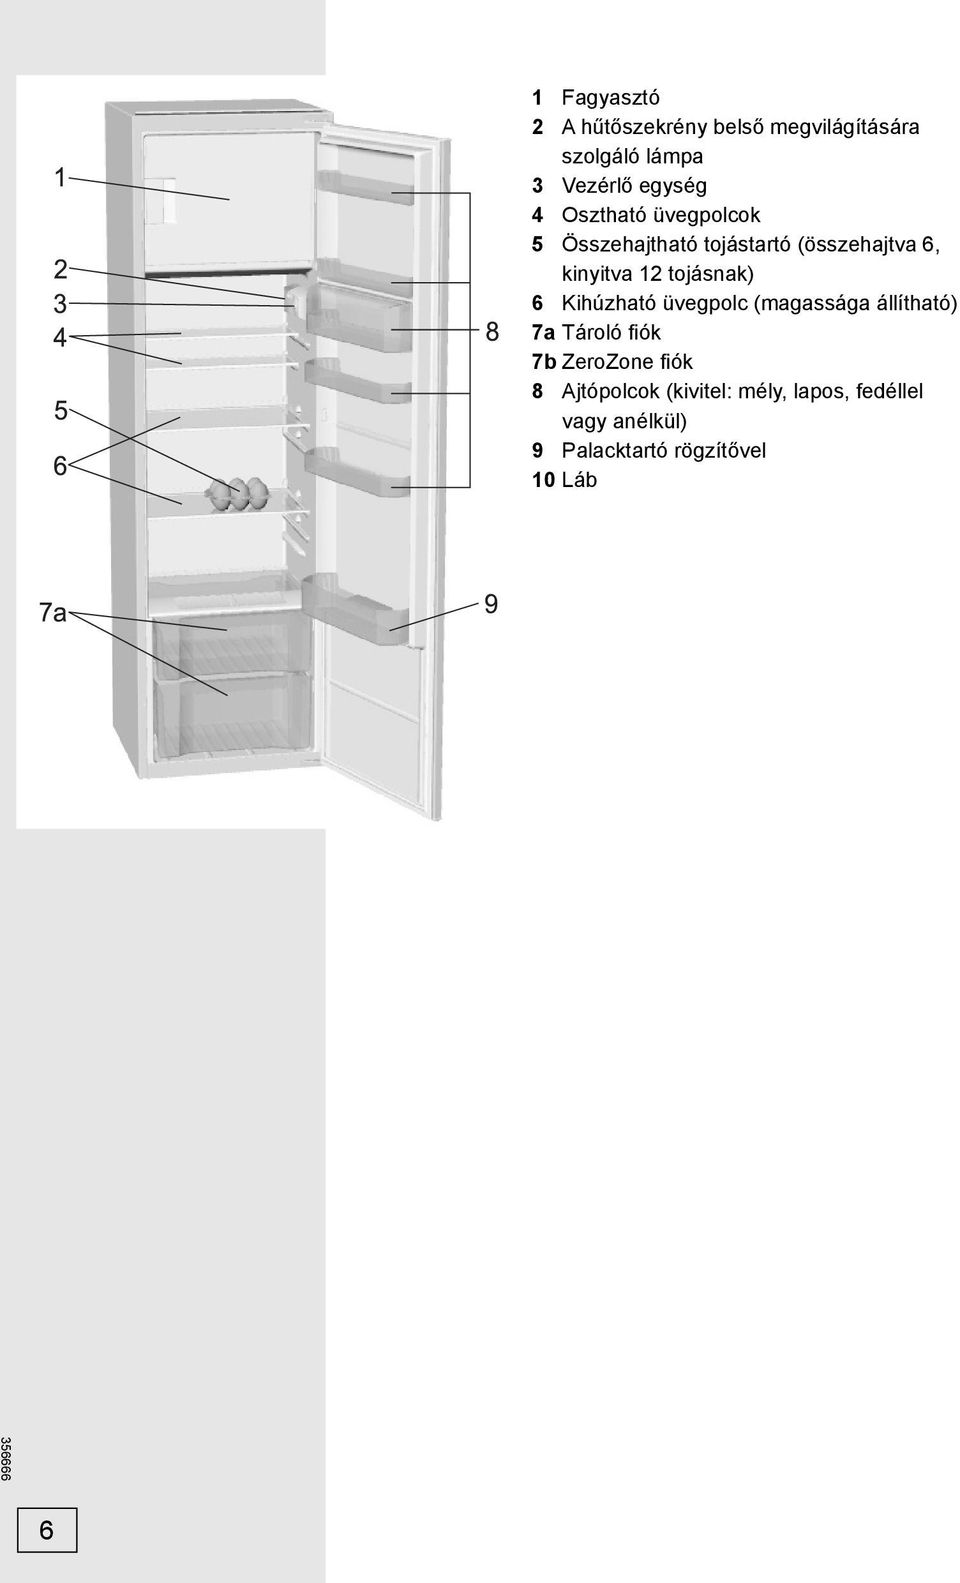 Használati utasítás. Hűtőszekrény fagyasztóval - PDF Ingyenes letöltés